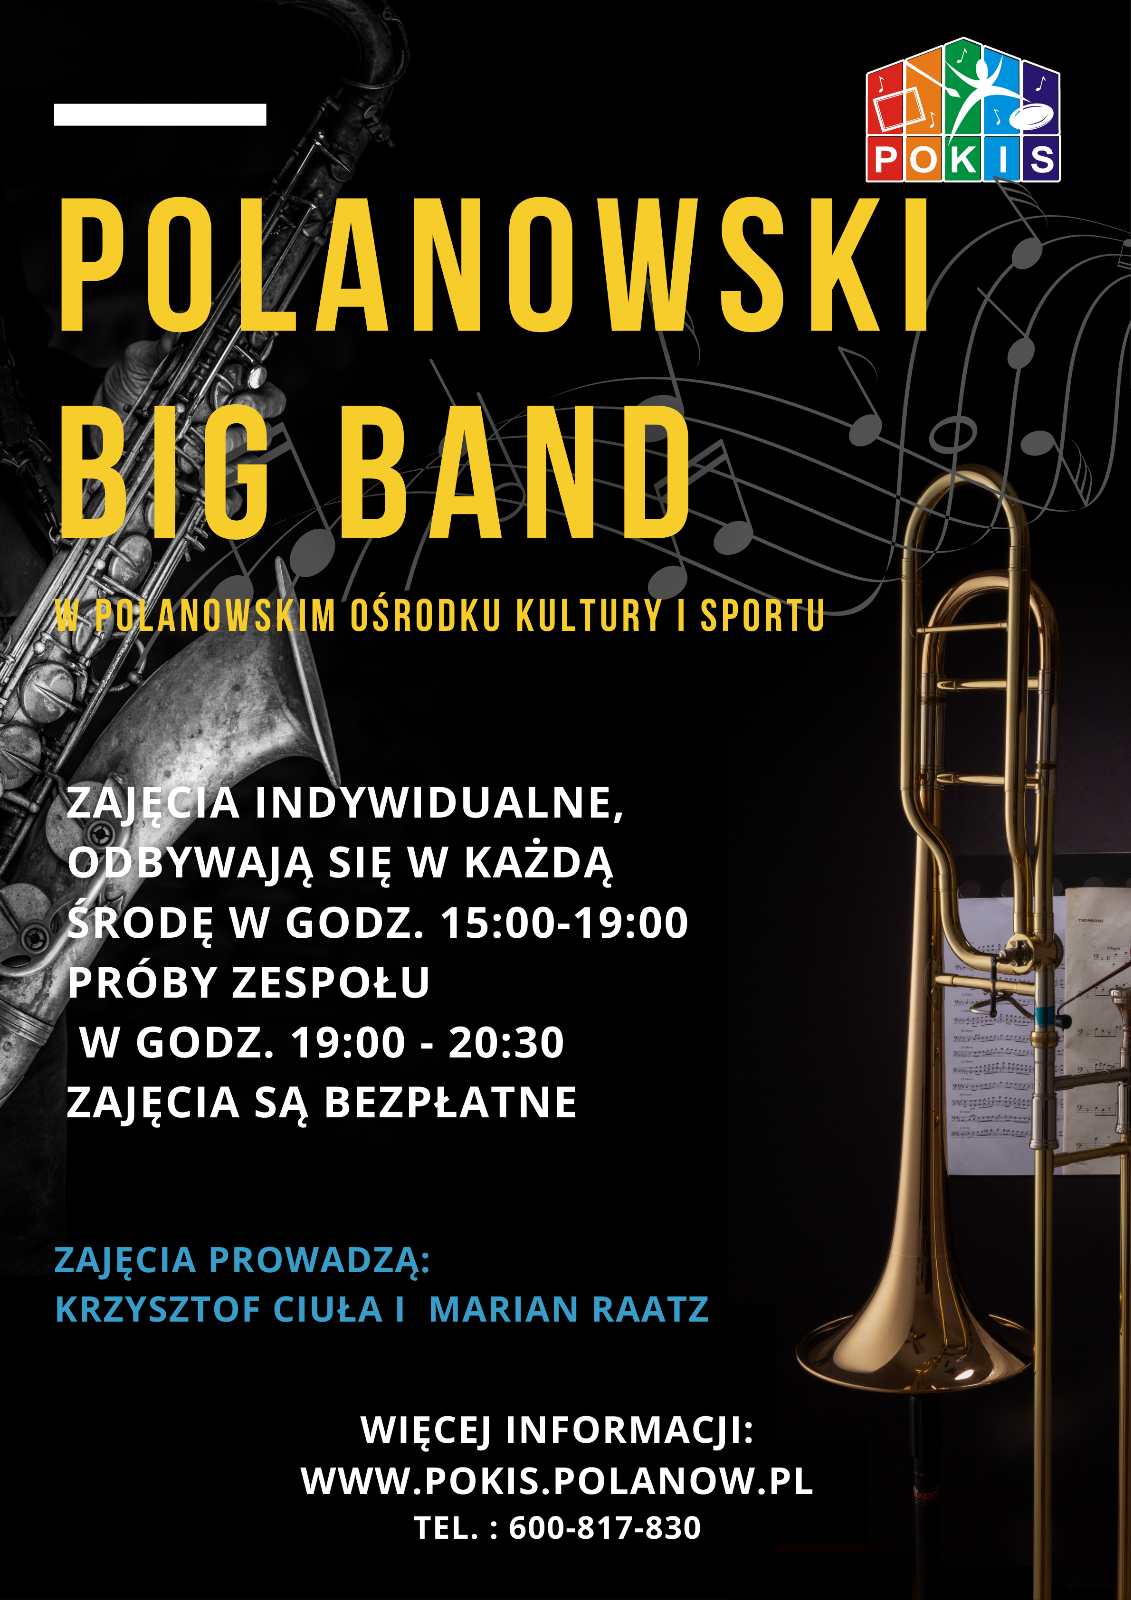 Polanowsk Big Band.png